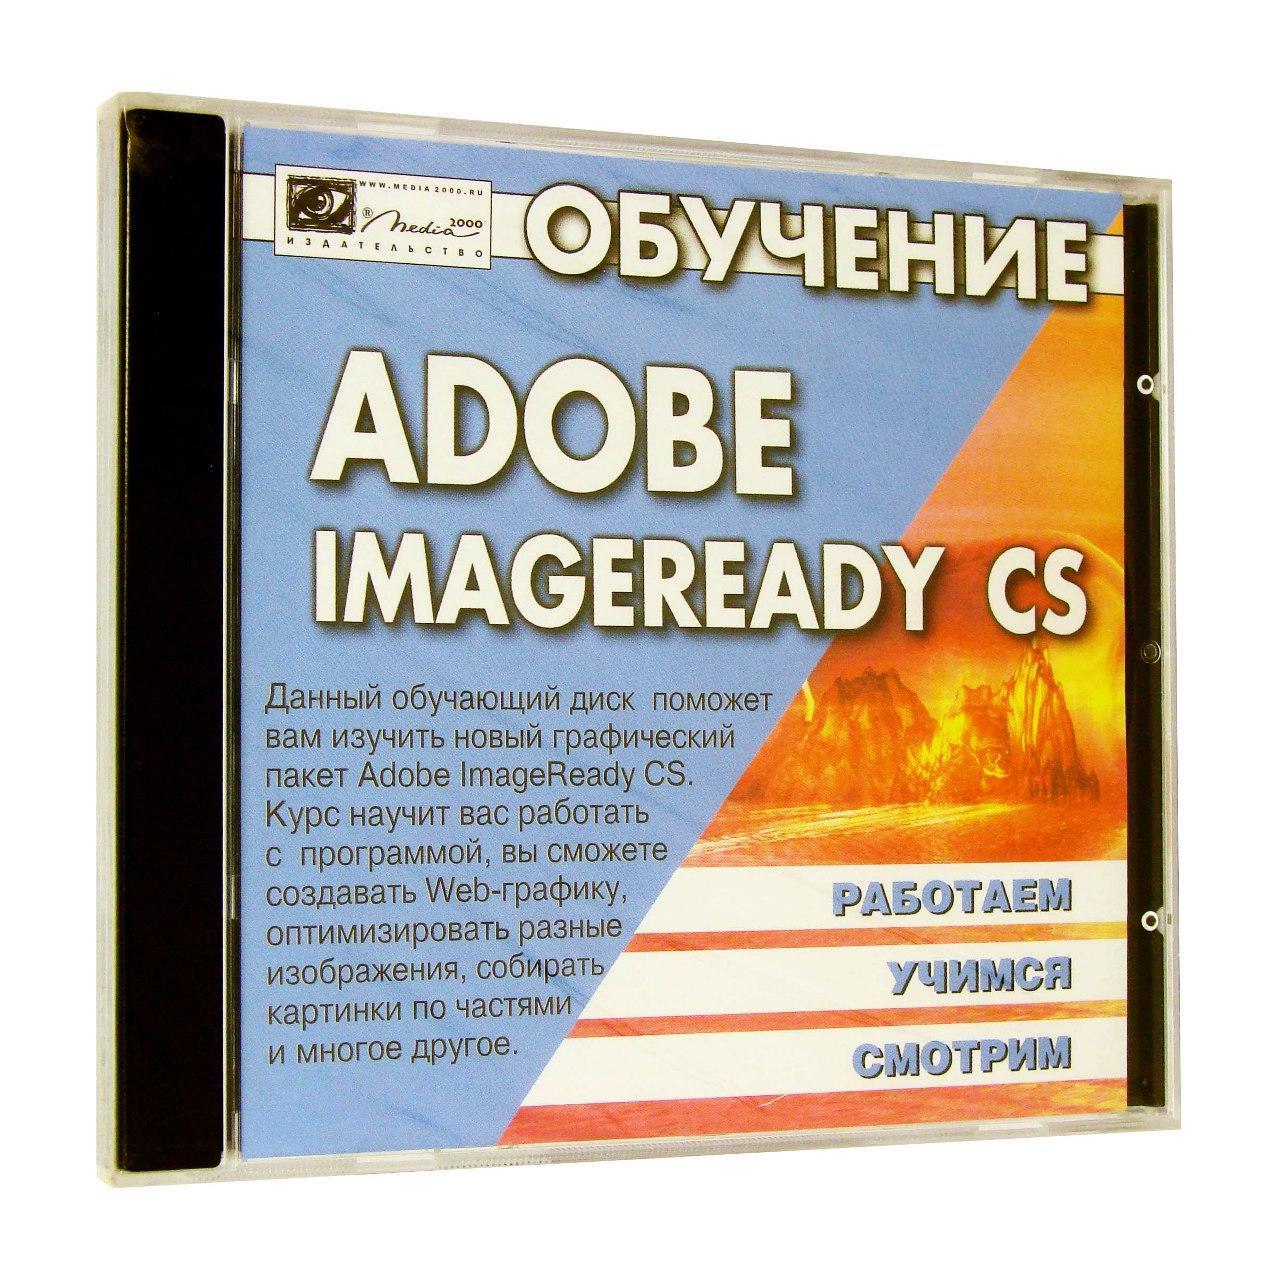 Компьютерный компакт-диск Обучение Adobe ImageReady CS 8.0 (PC), фирма "Медиа 2000", 1CD